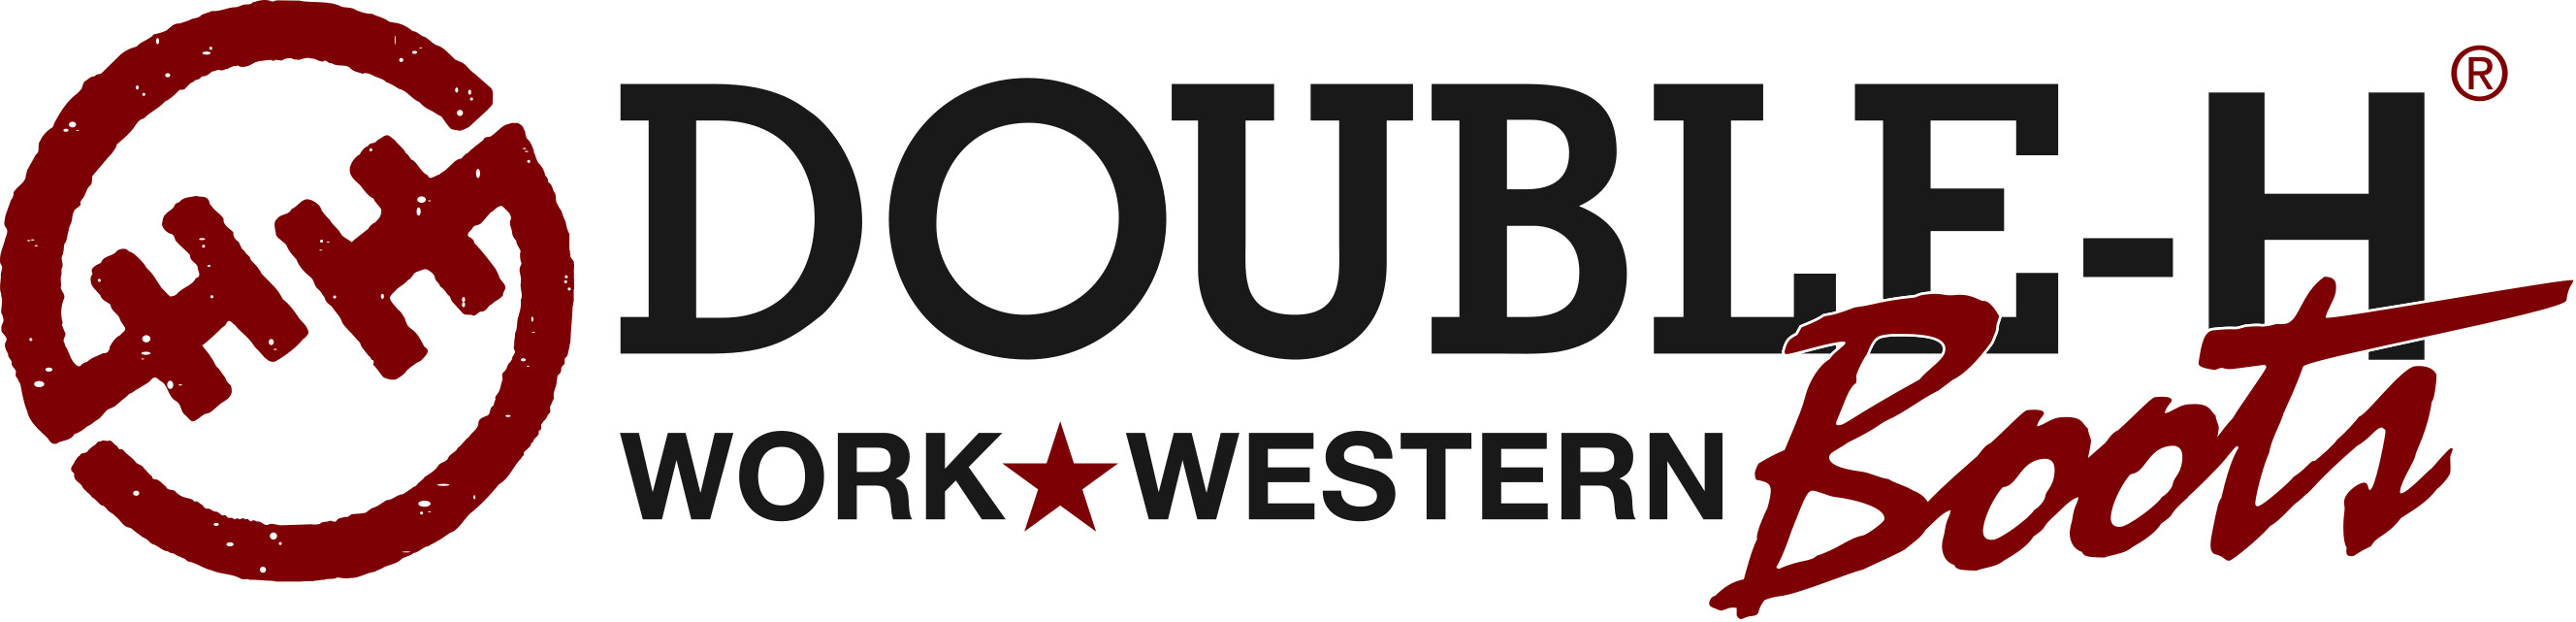 DH_logo_work-western logo